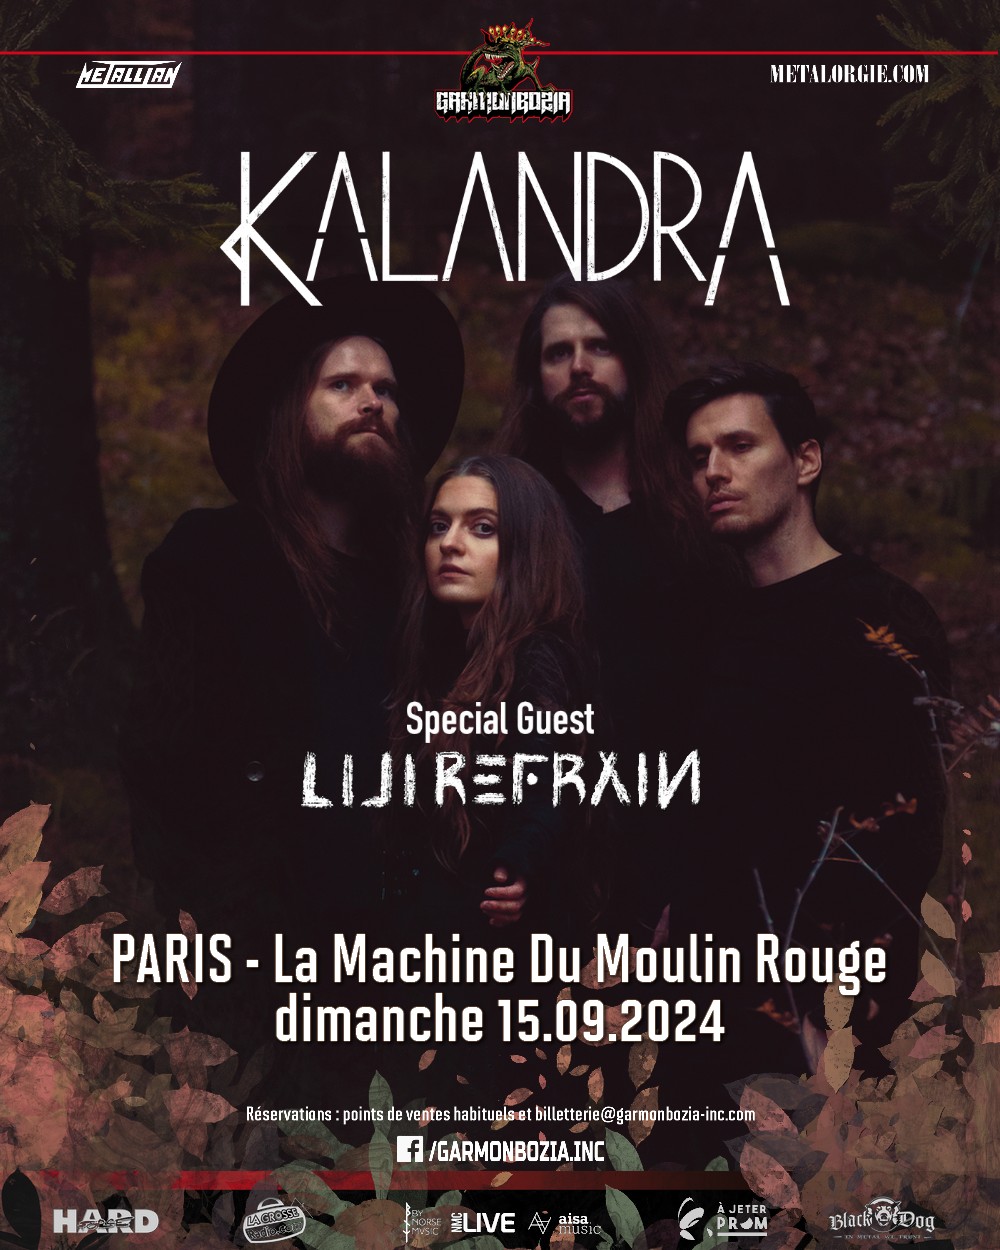 Kalandra + Lili Refrain @ La Machine du Moulin Rouge - Paris (75) - 15 septembre 2024